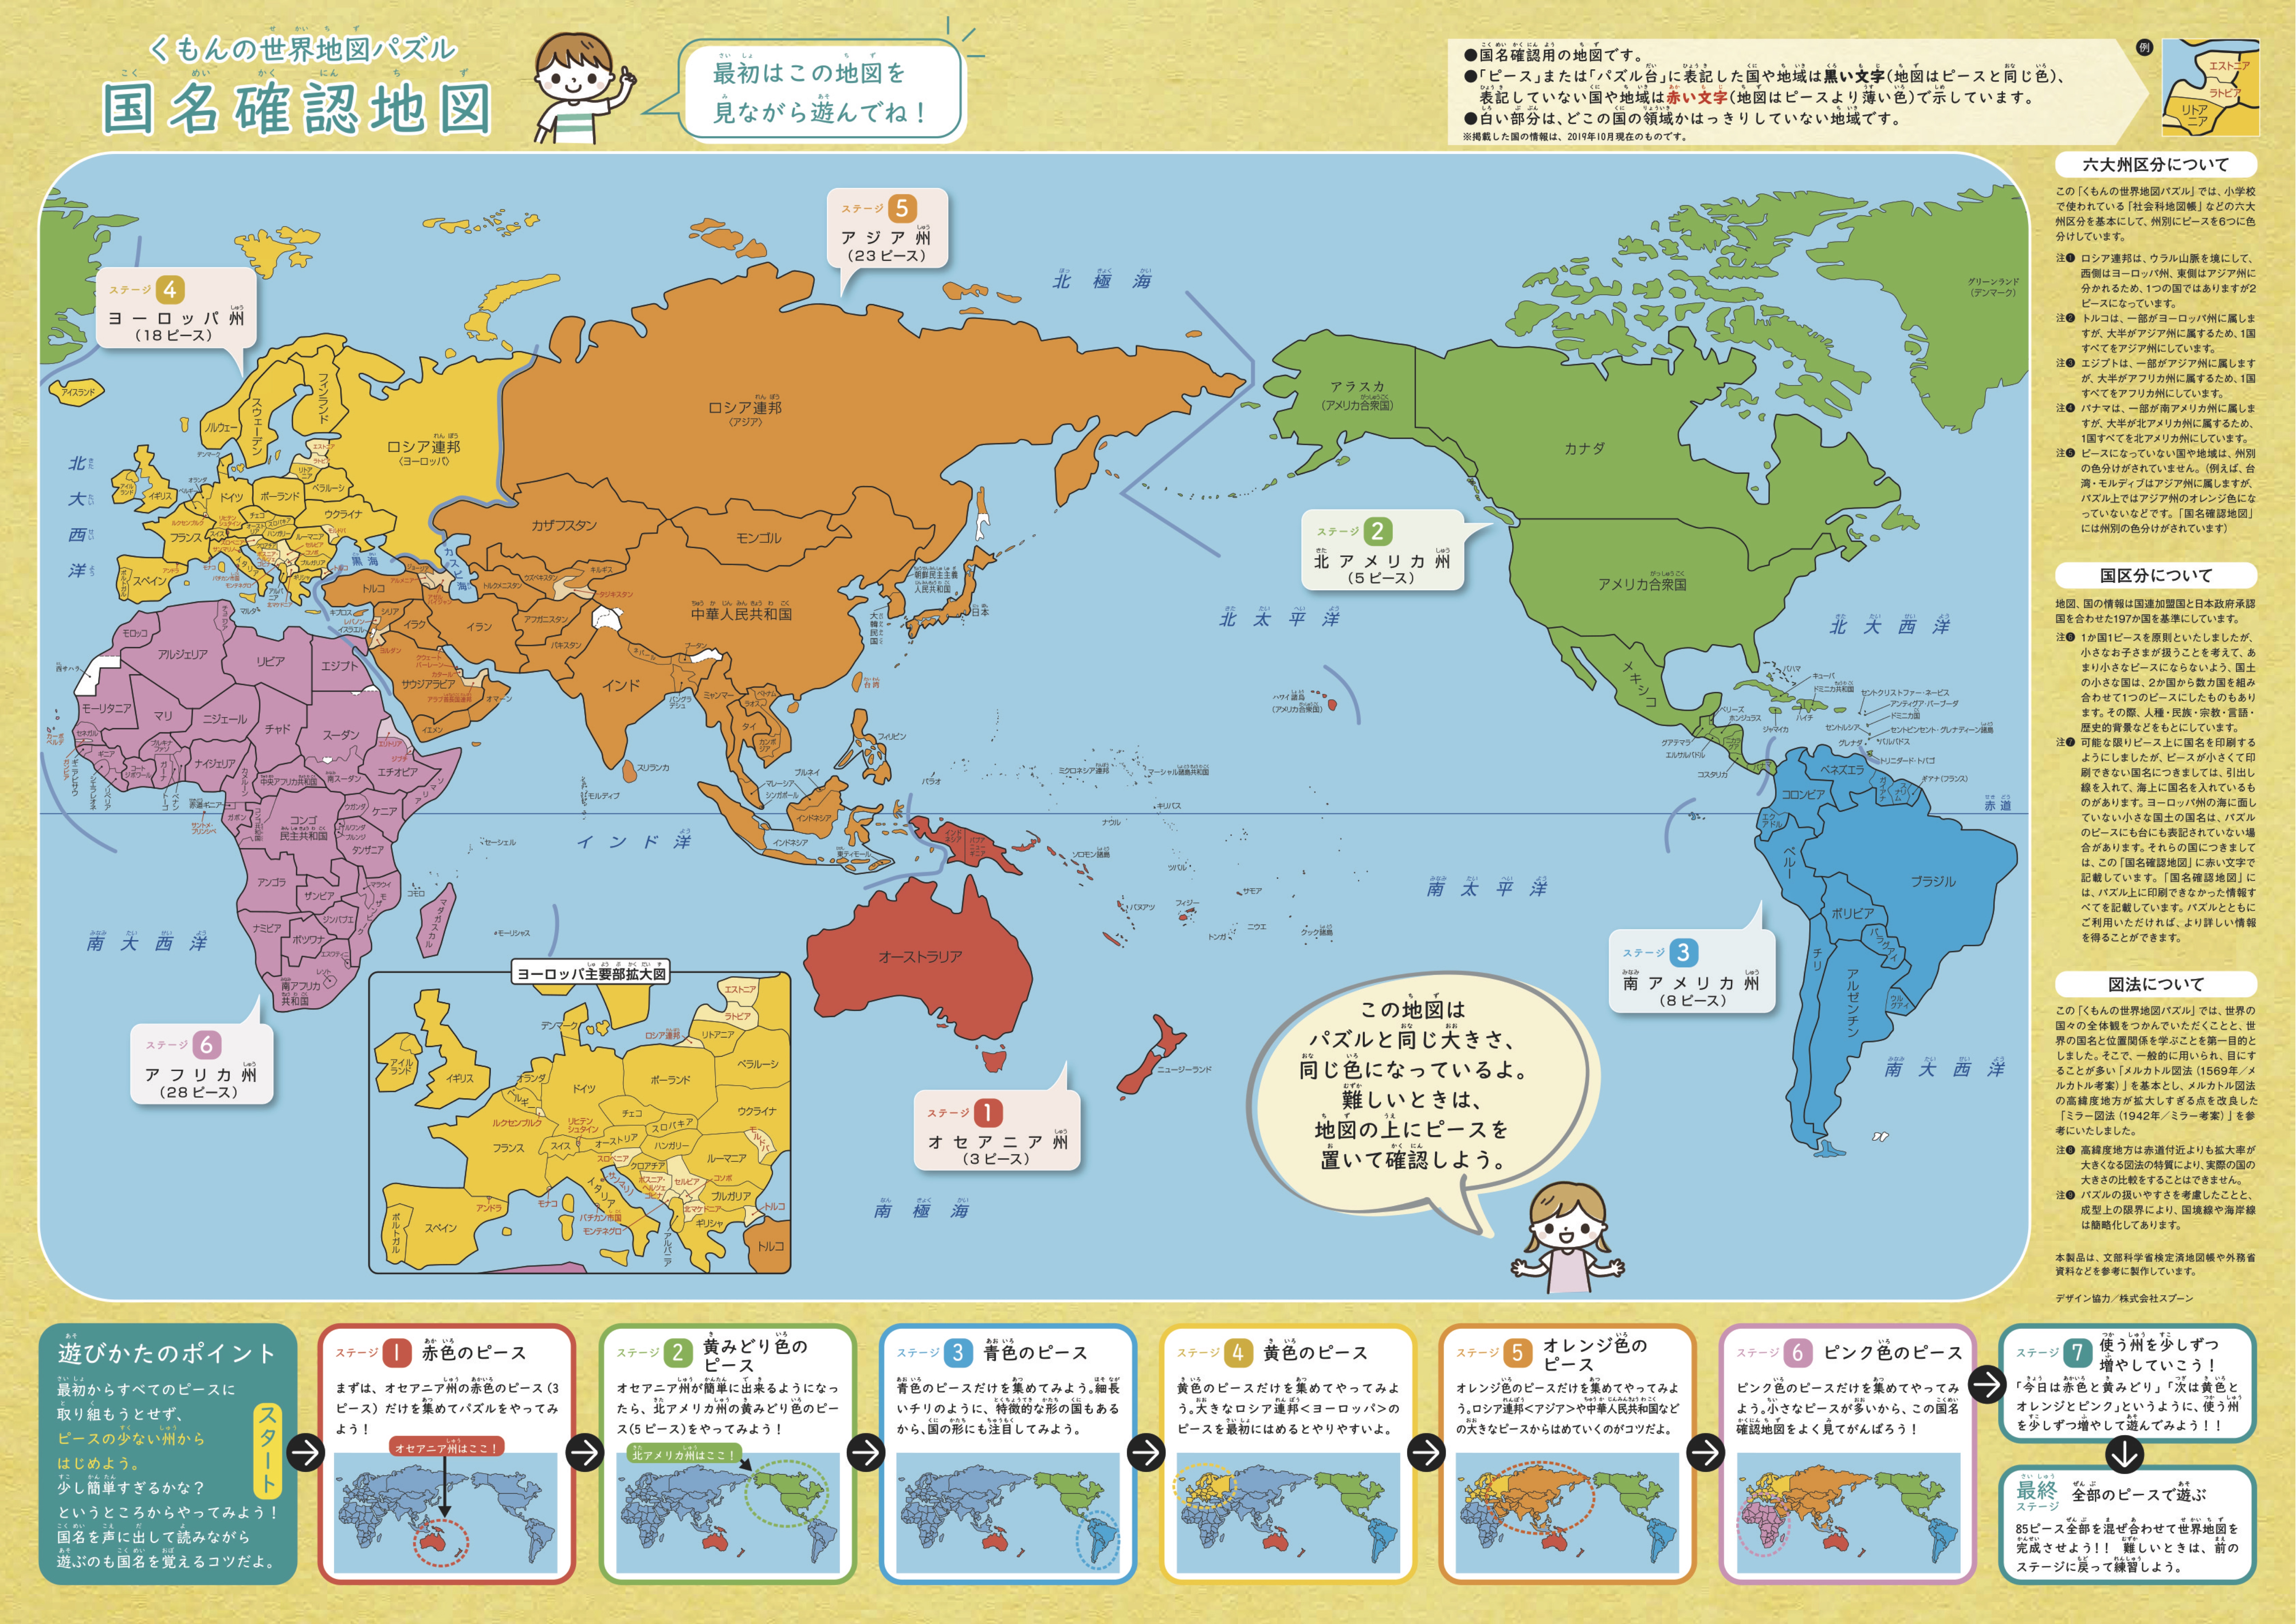 くもんの世界地図パズル くもん出版 商品詳細 マイ グリーンスタンプ ポイントサービス